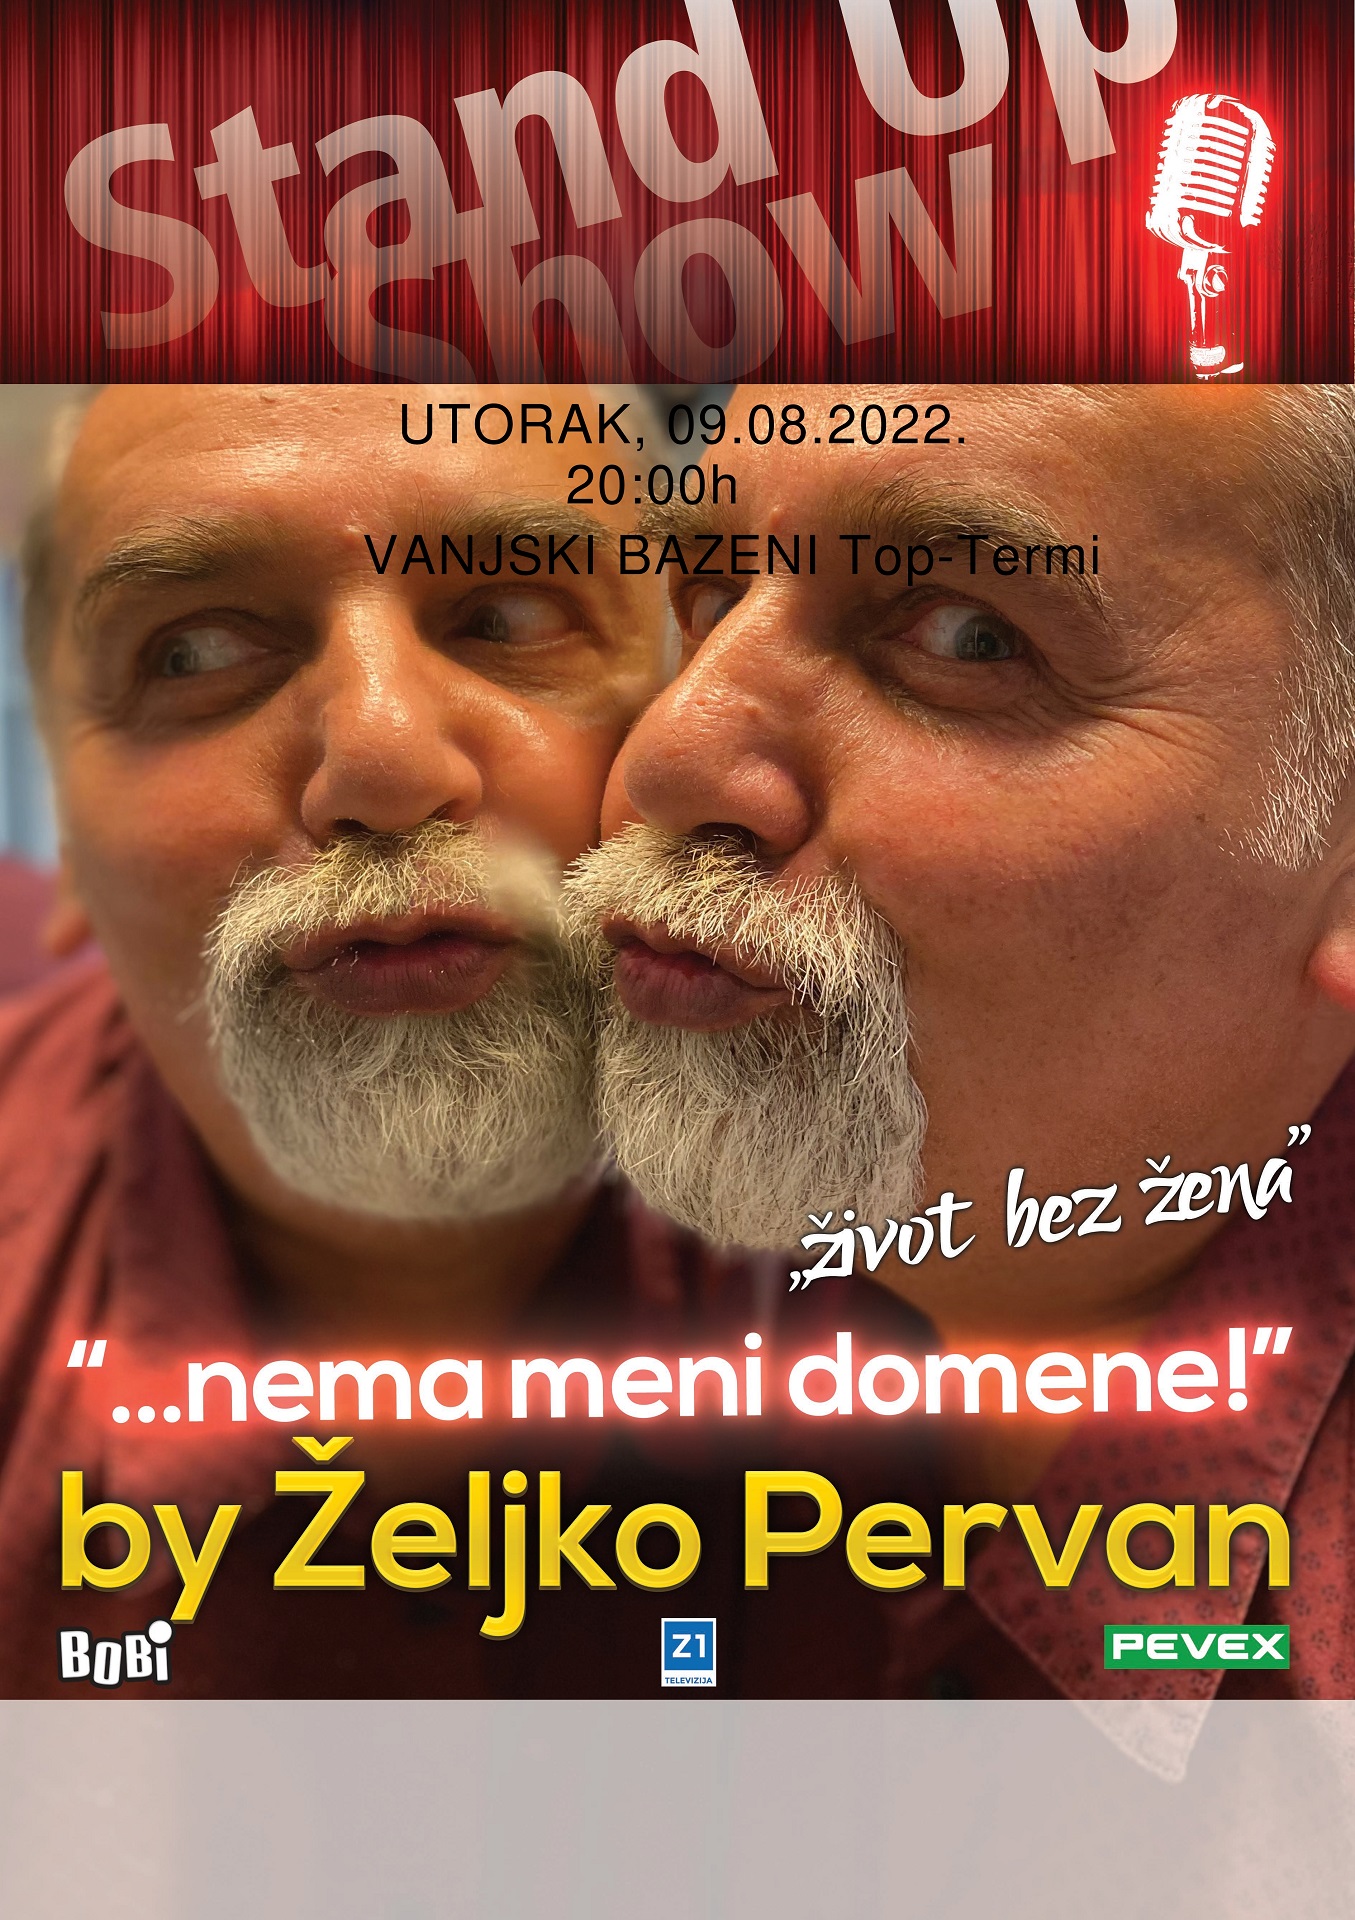 ŽELJKO PERVAN – nova stand-up komedija “Nema meni domene” Topusko, 09.08.2022. ULAZ BESPLATAN